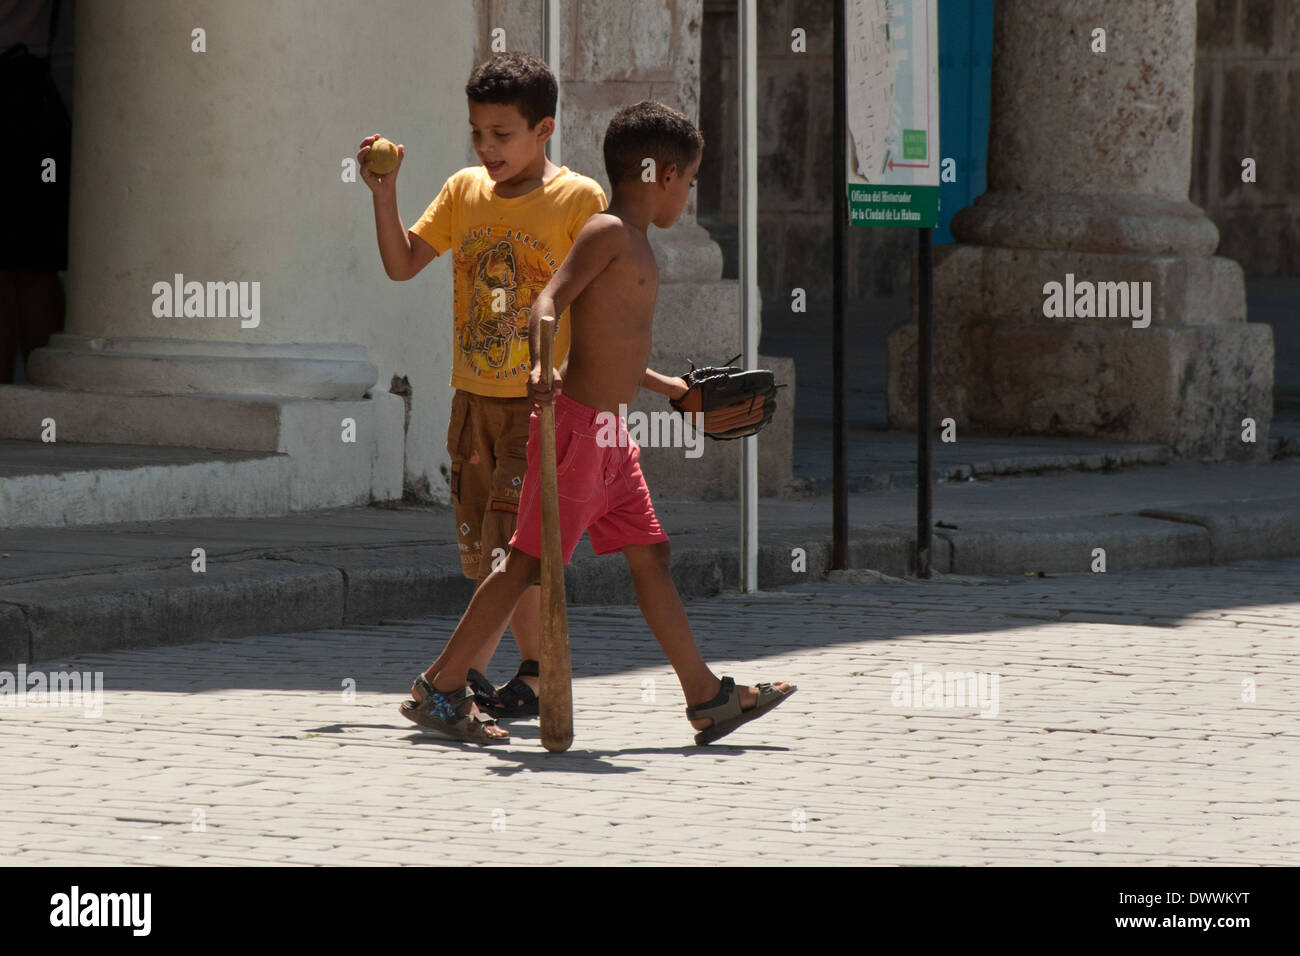 Boys playing baseball in Plaza Vieja in Habana Vieja, Havana, Cuba Stock Photo